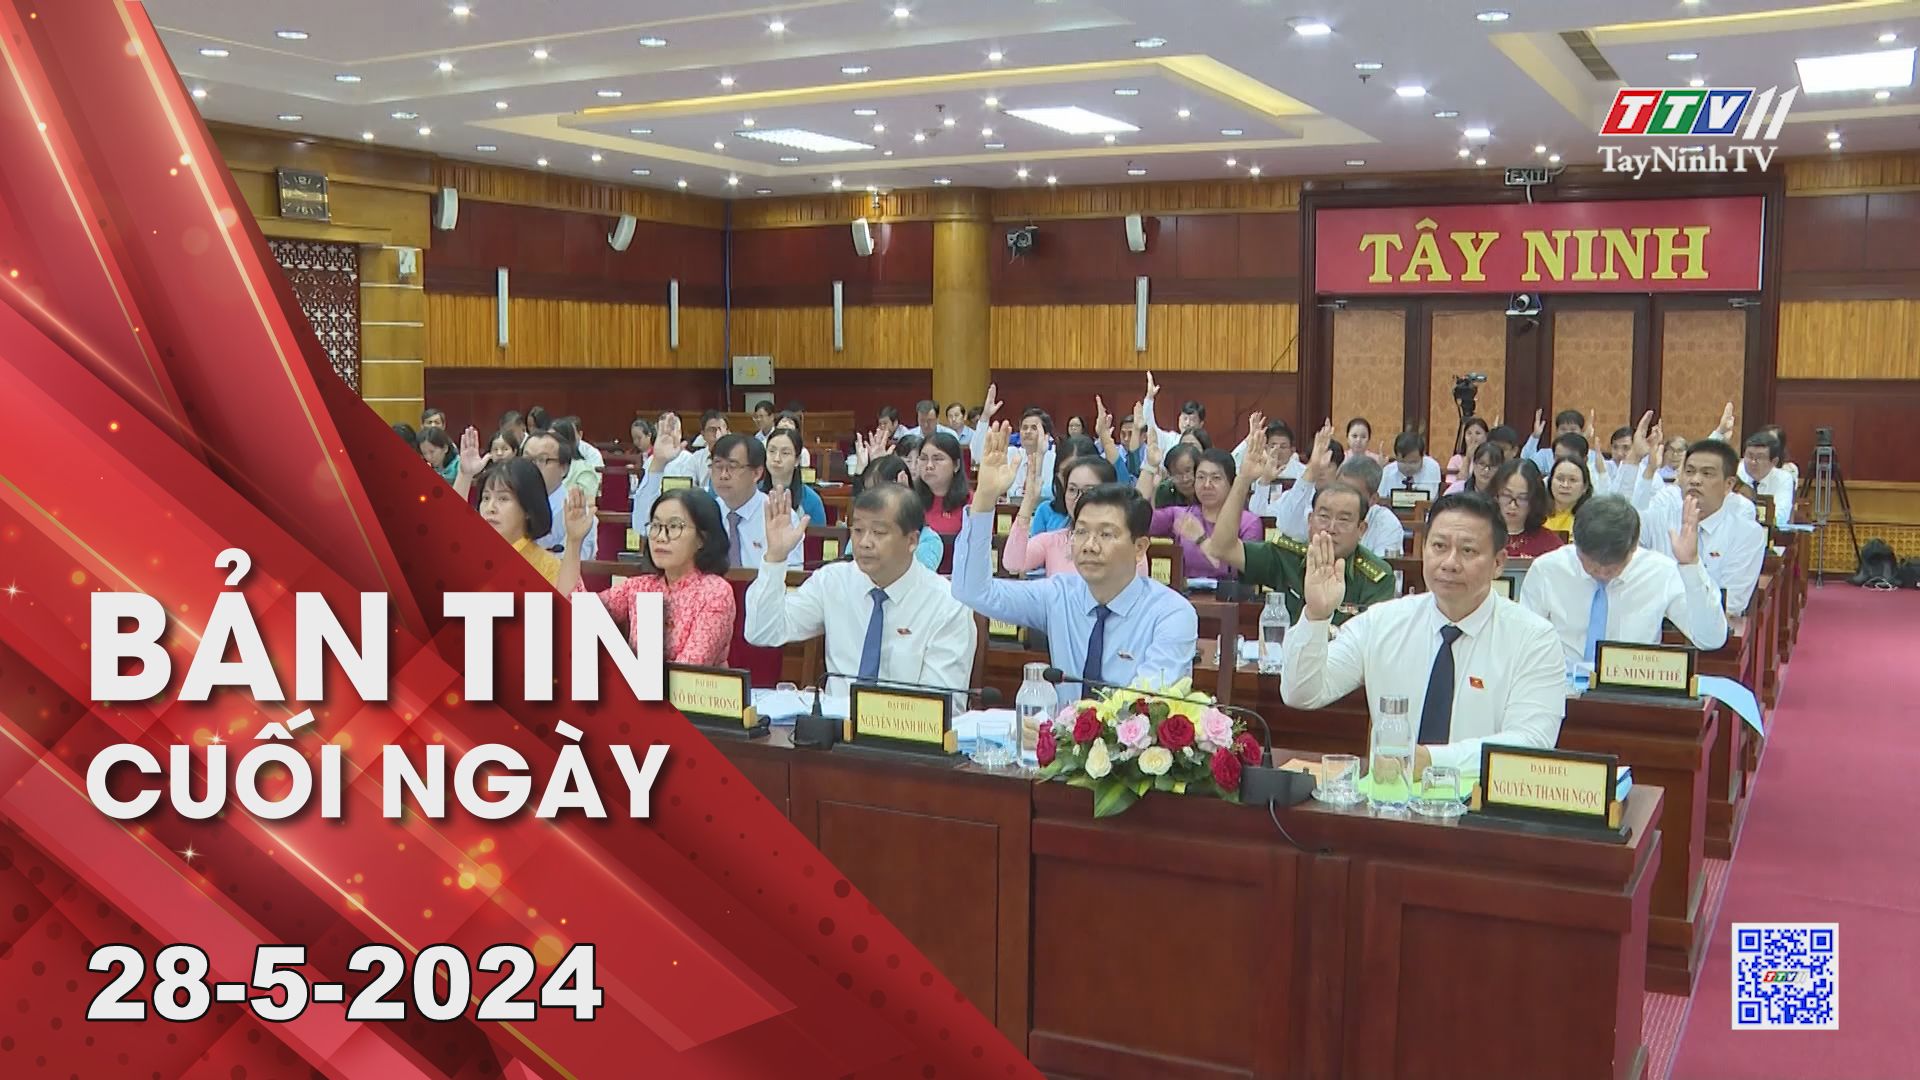 Bản tin cuối ngày 28-5-2024 | Tin tức hôm nay | TayNinhTV